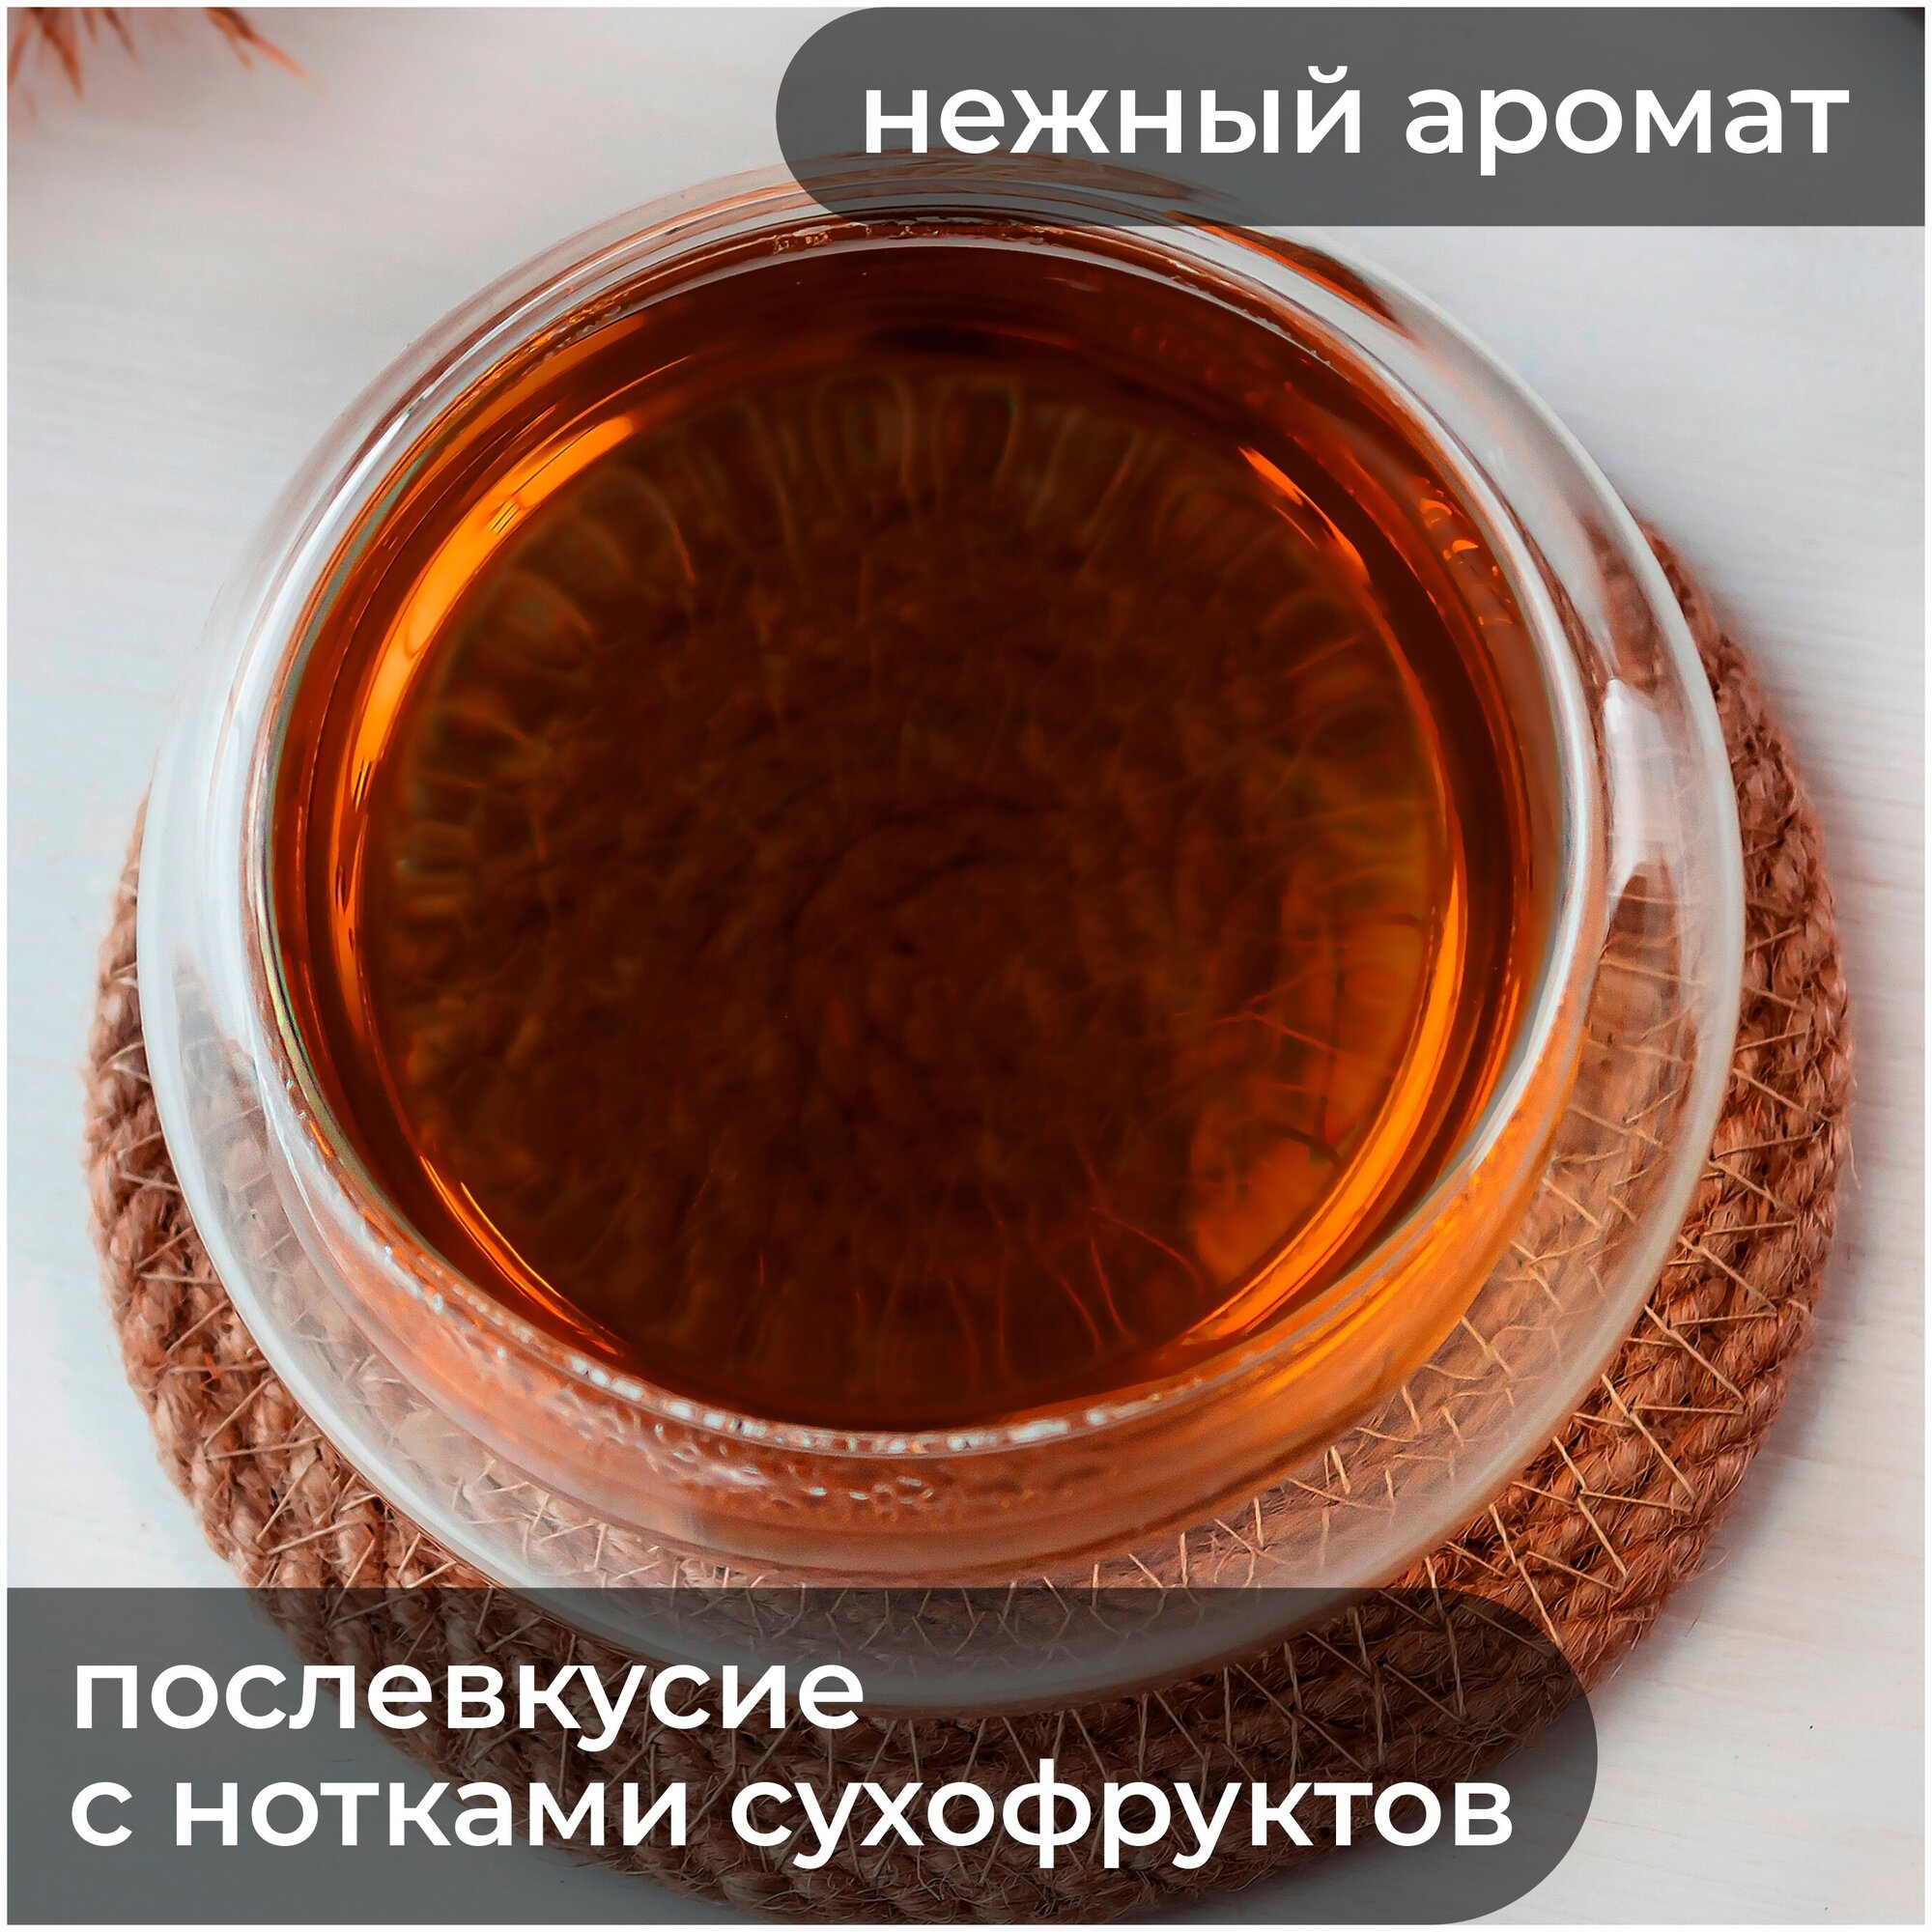 Русский Иван-чай с чагой березовой и шиповником, 75 грамм, ферментированный листовой иван-чай (кипрей) с чагой березовой и шиповником